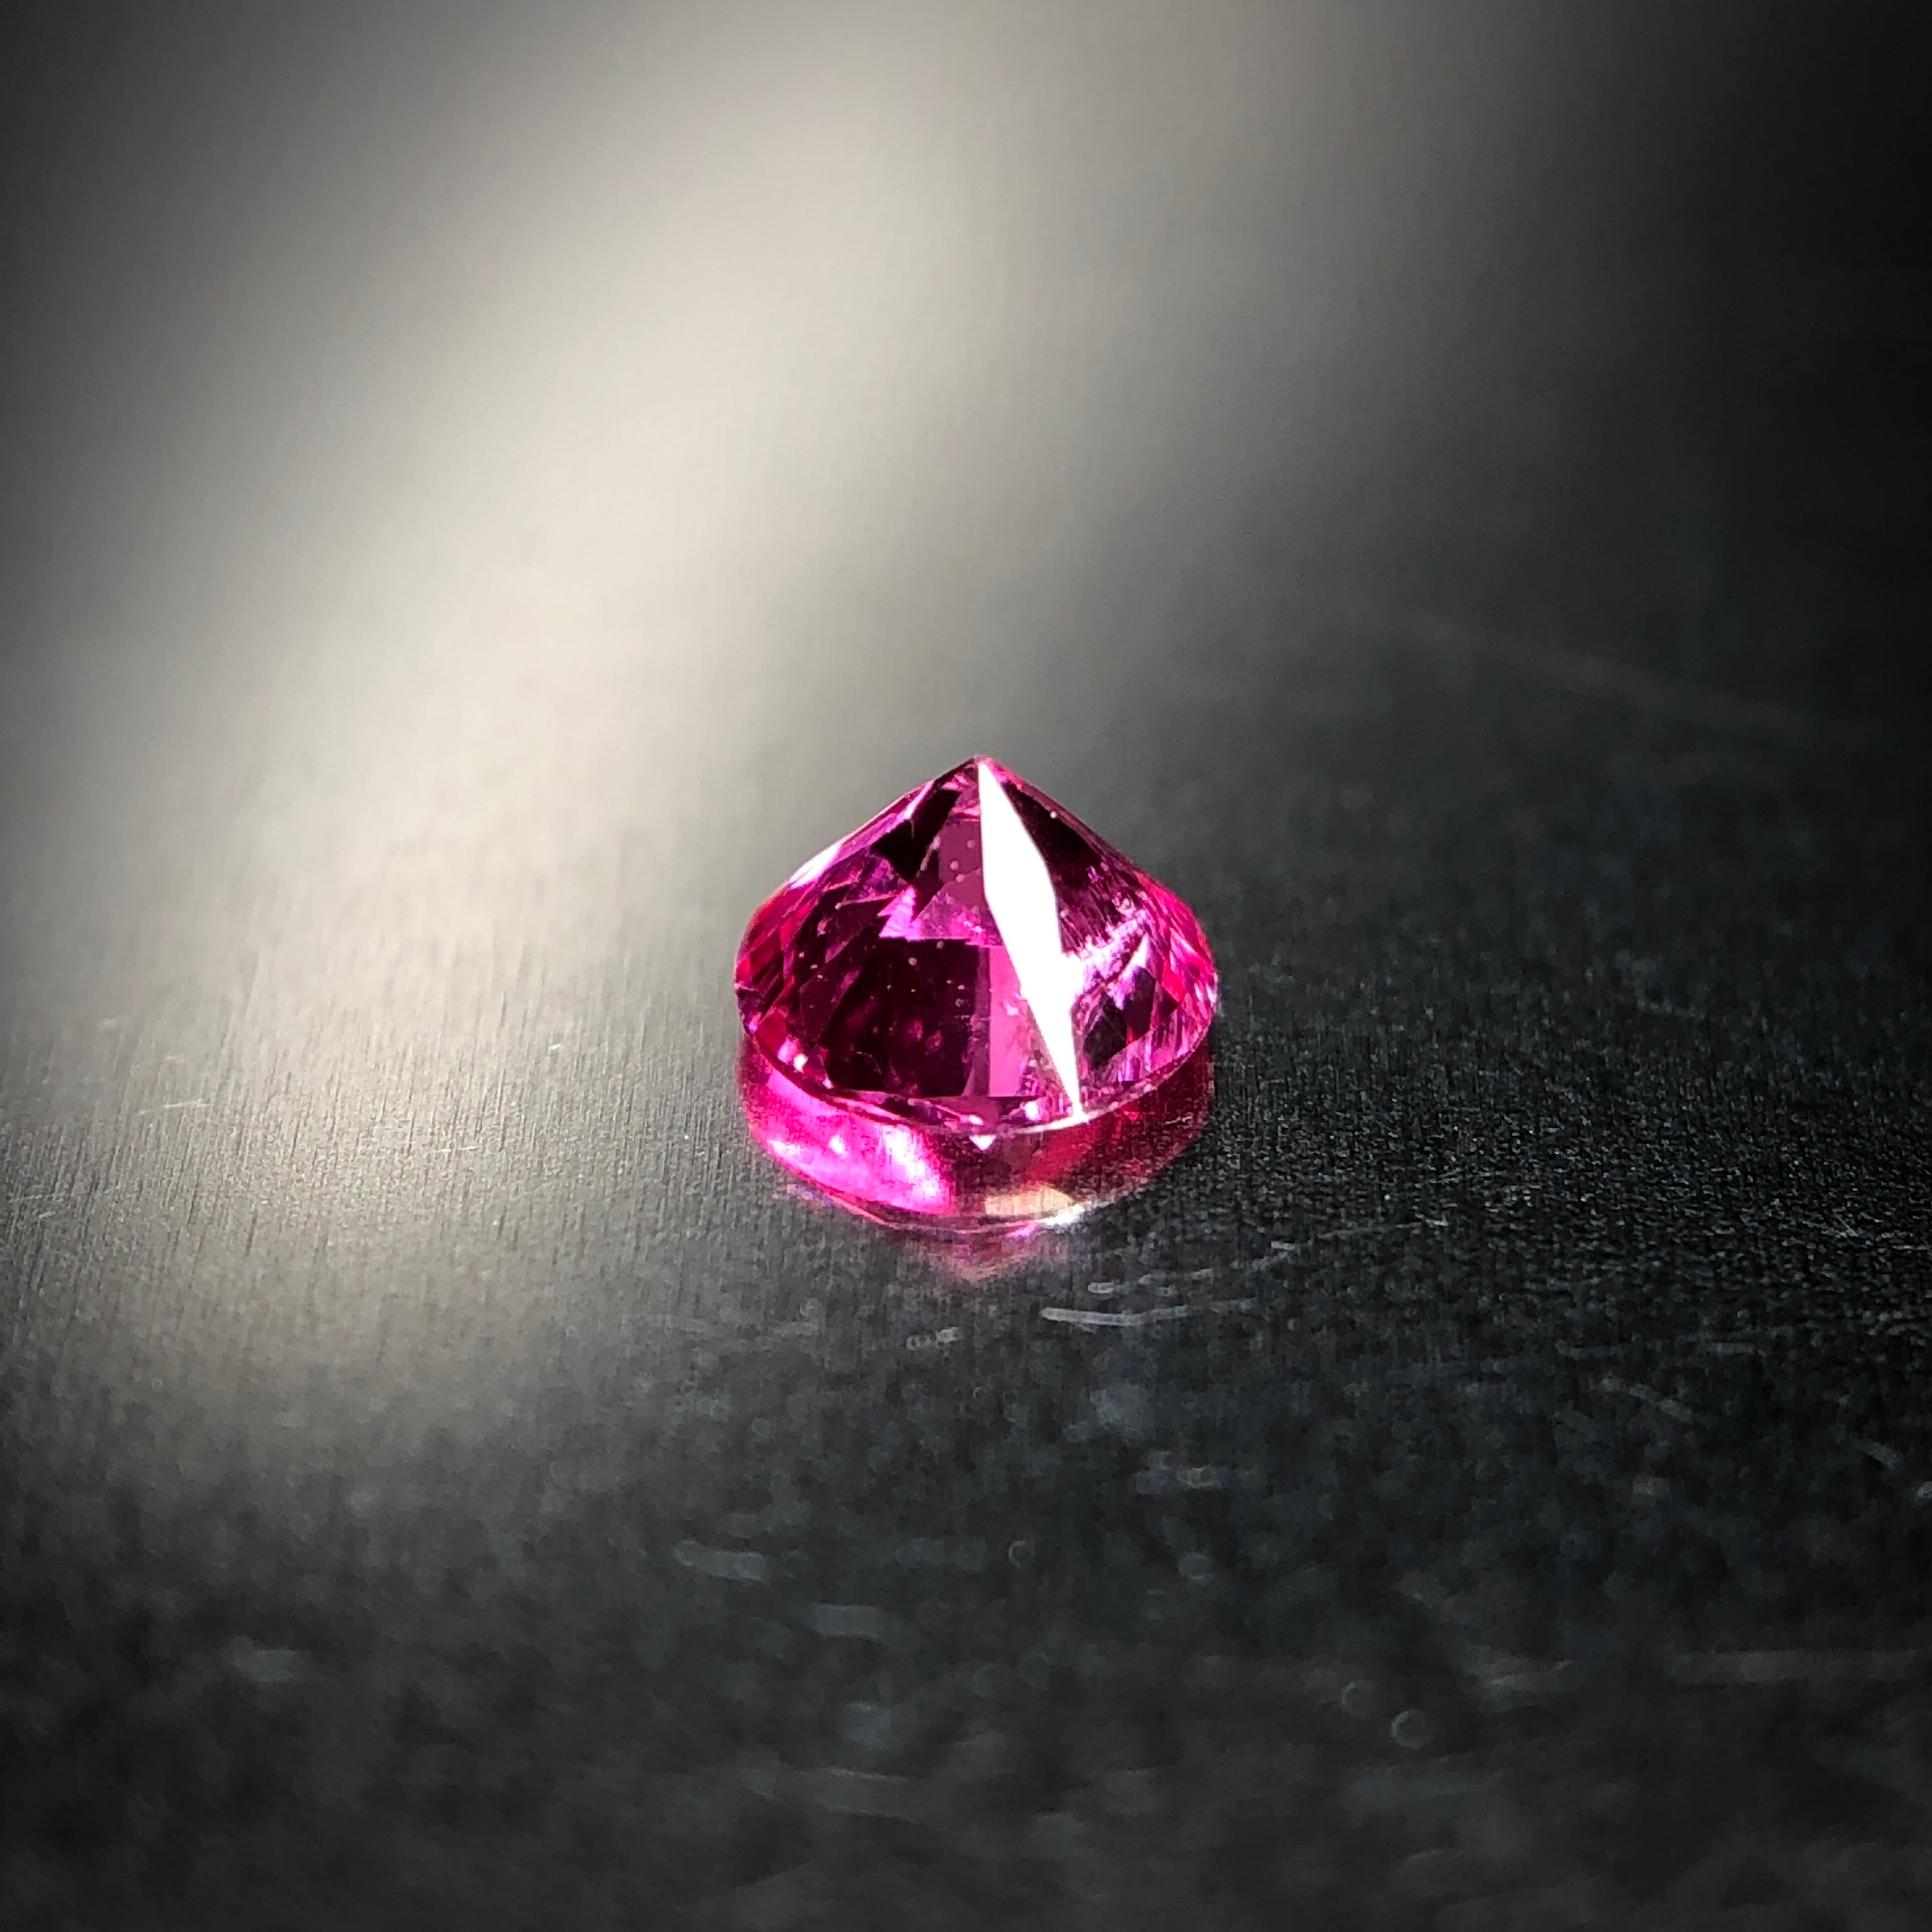 ネオン溢れるホットピンクカラー 0.13ct タンザニア産 天然 アヤナスピネル | Frederick’s Gems&Jewelry powered  by BASE